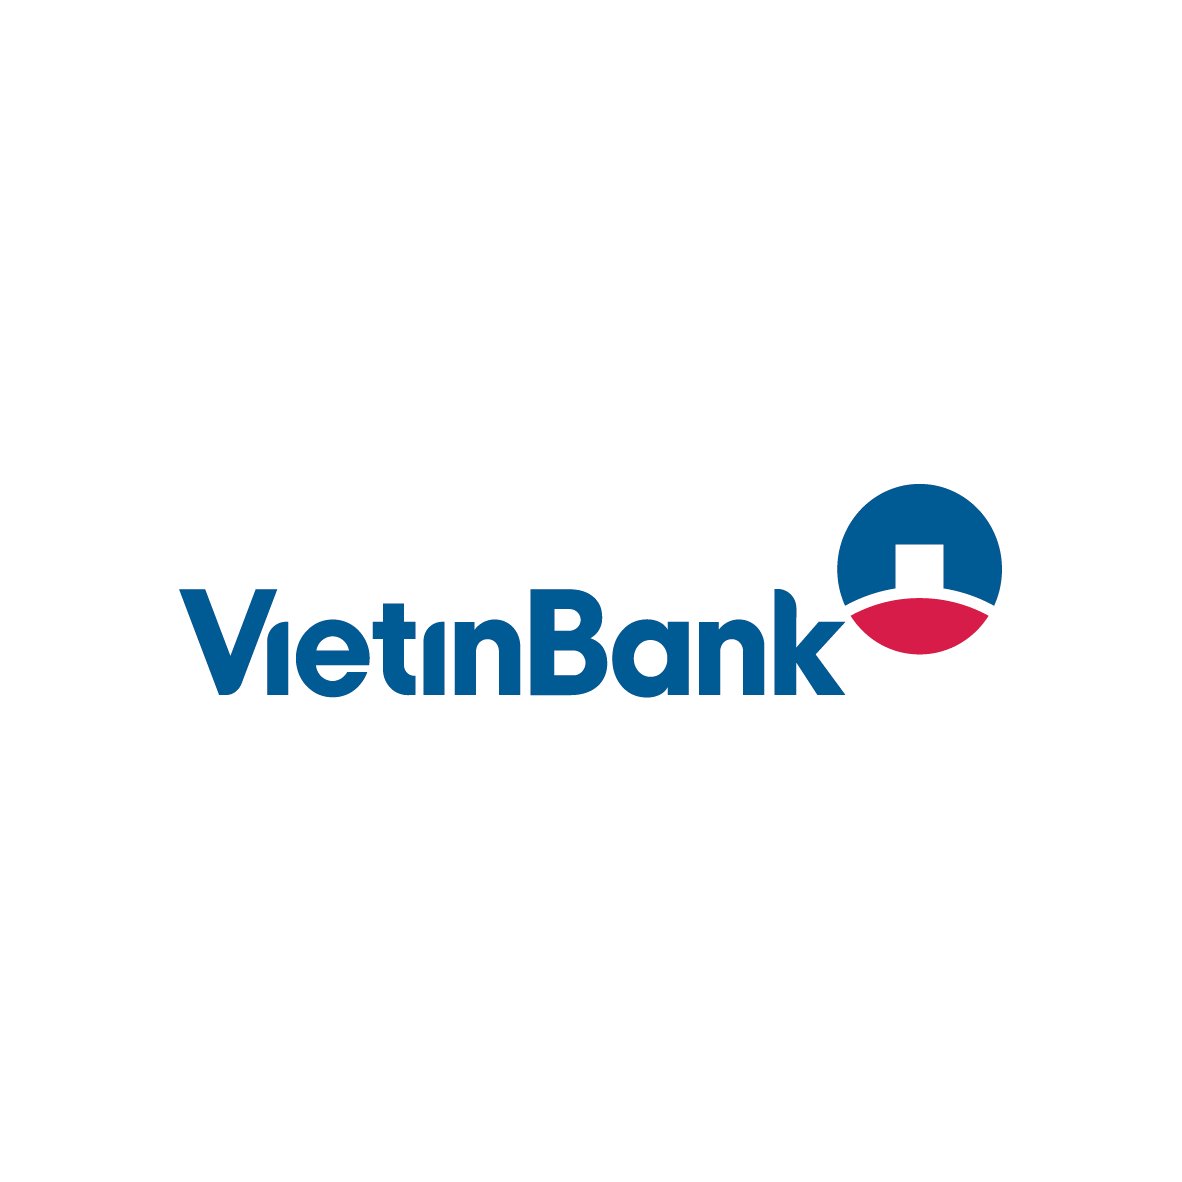 Tải logo Vietinbank PNG, Vietinbank logo vector, CDR, AI, EPS, PDF ...